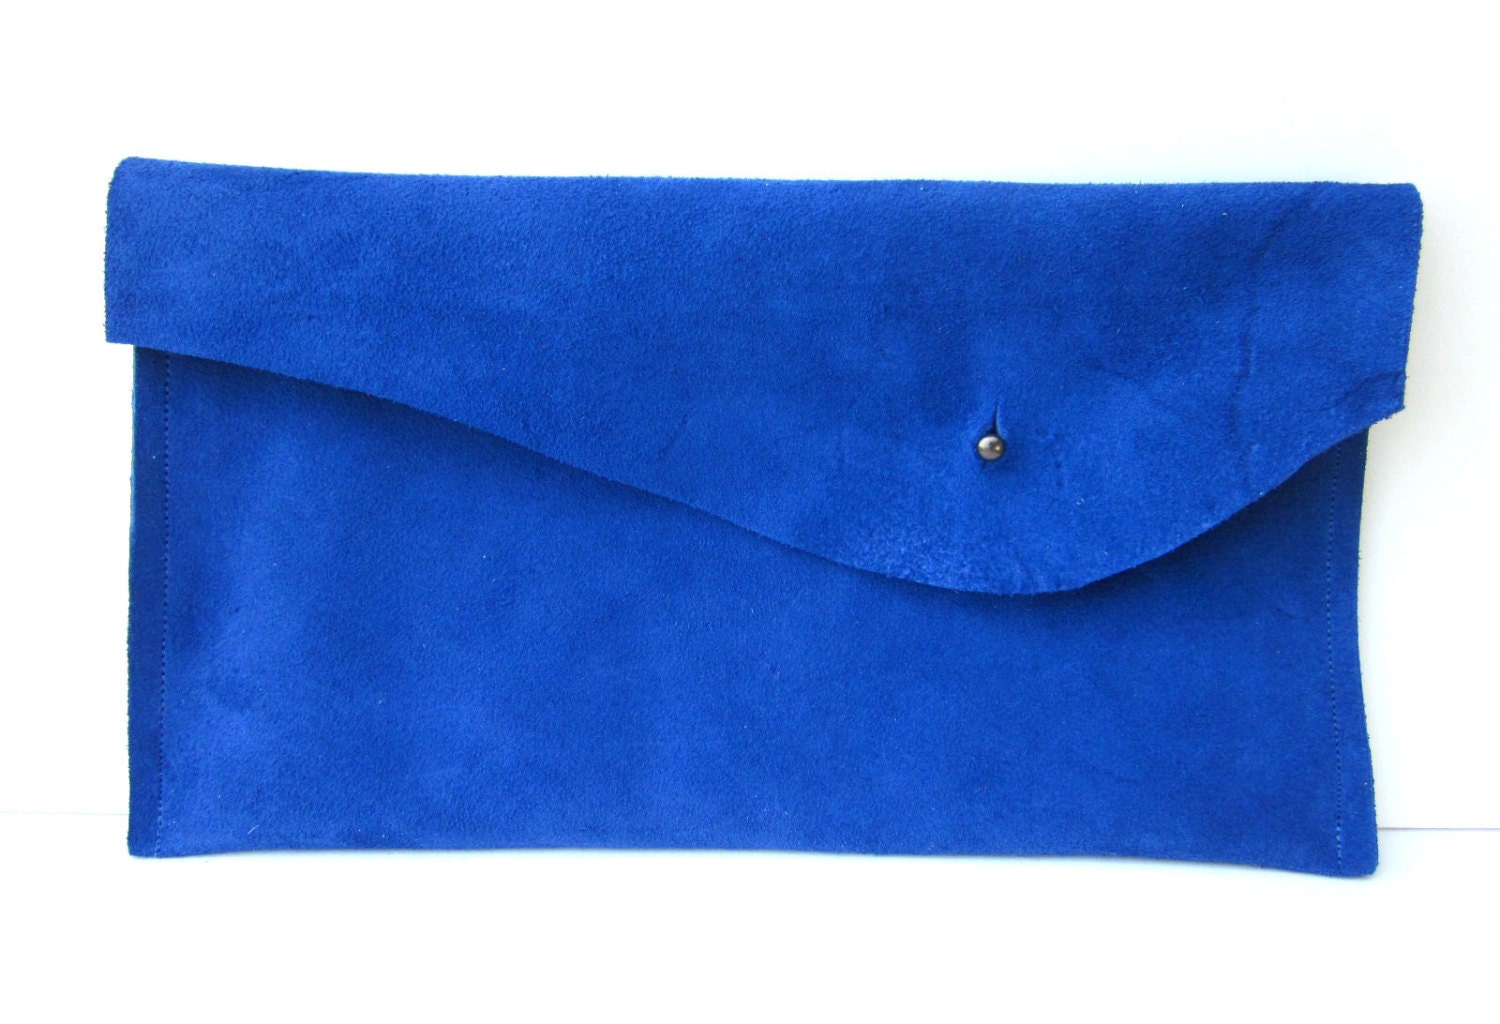 Electric Blue Clutch Cobalt Blue Clutch Leather Clutch